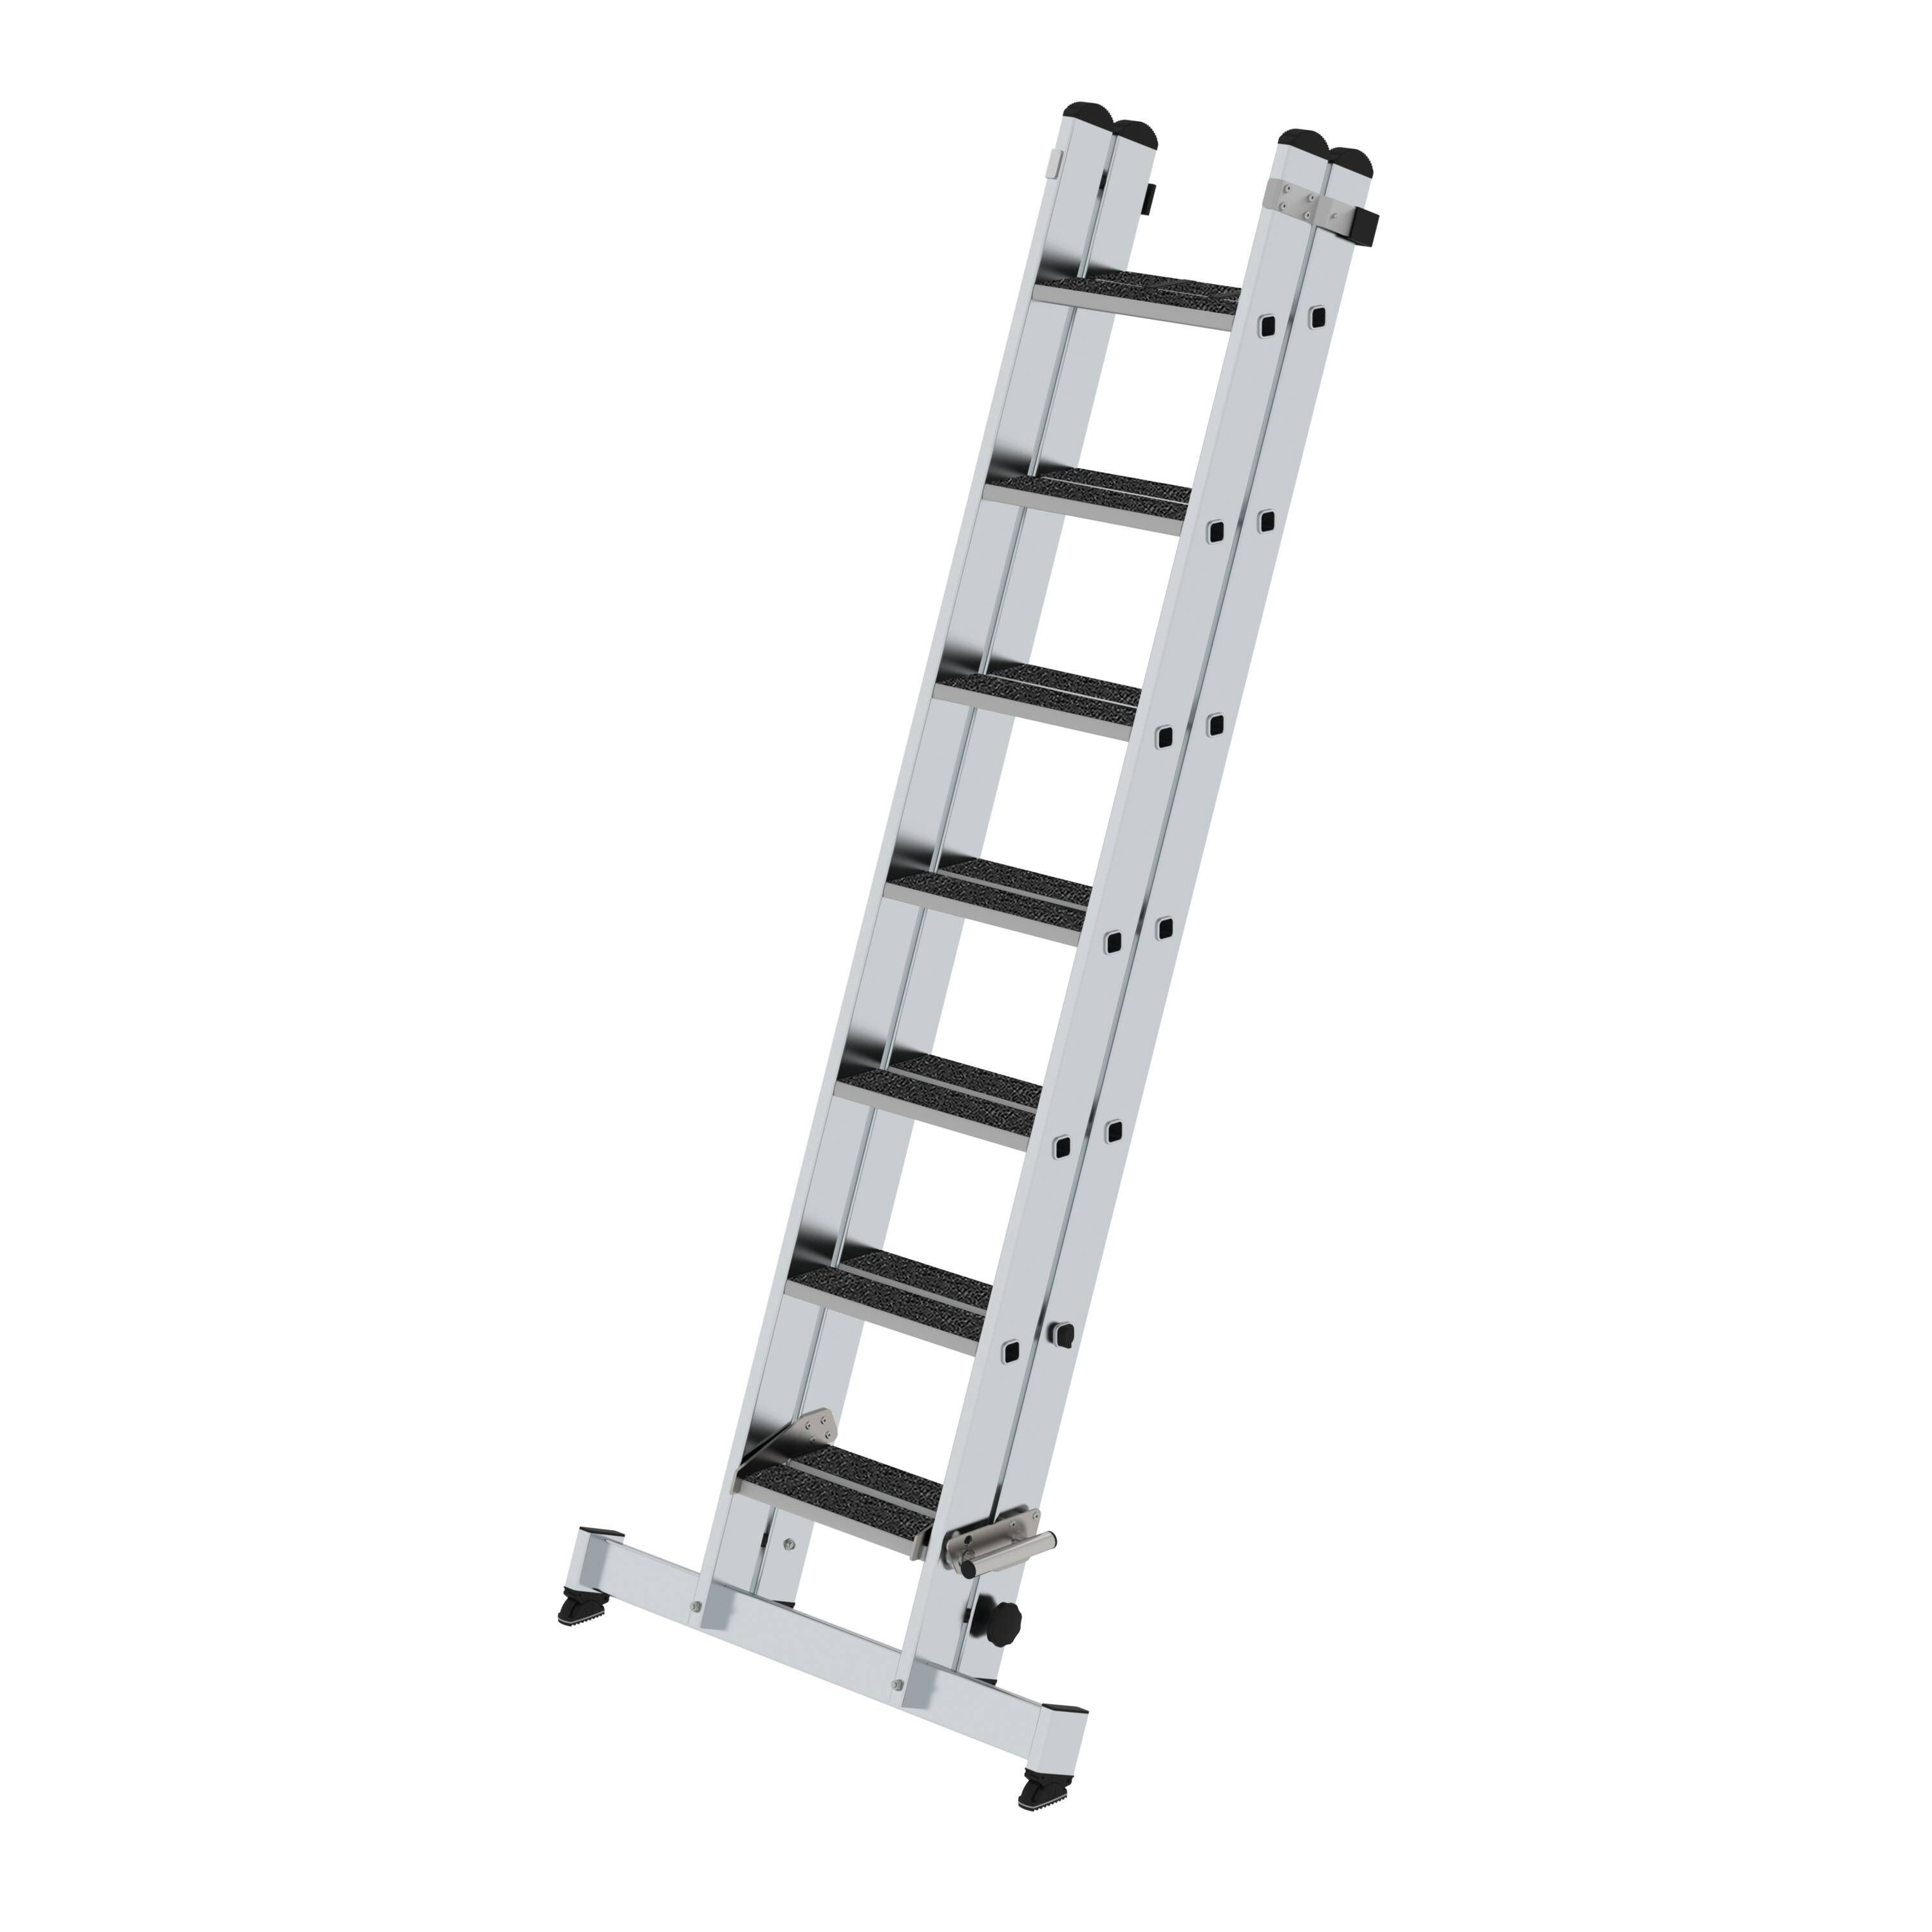 Stufen-Schiebeleiter 2-teilig mit nivello-Traverse und clip-step R13 2x7